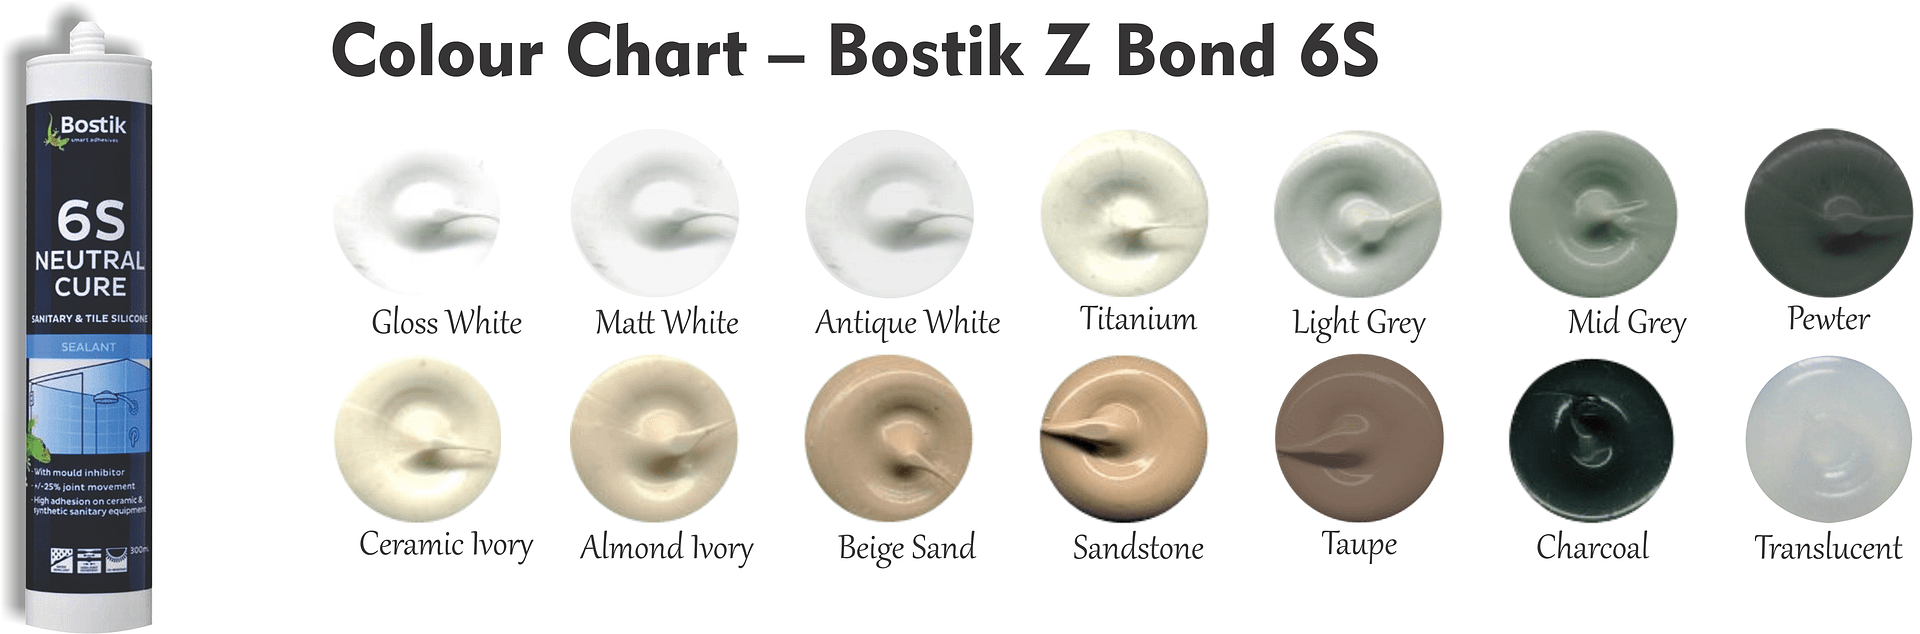 Colour Chart Bostik Z Bond 6S 